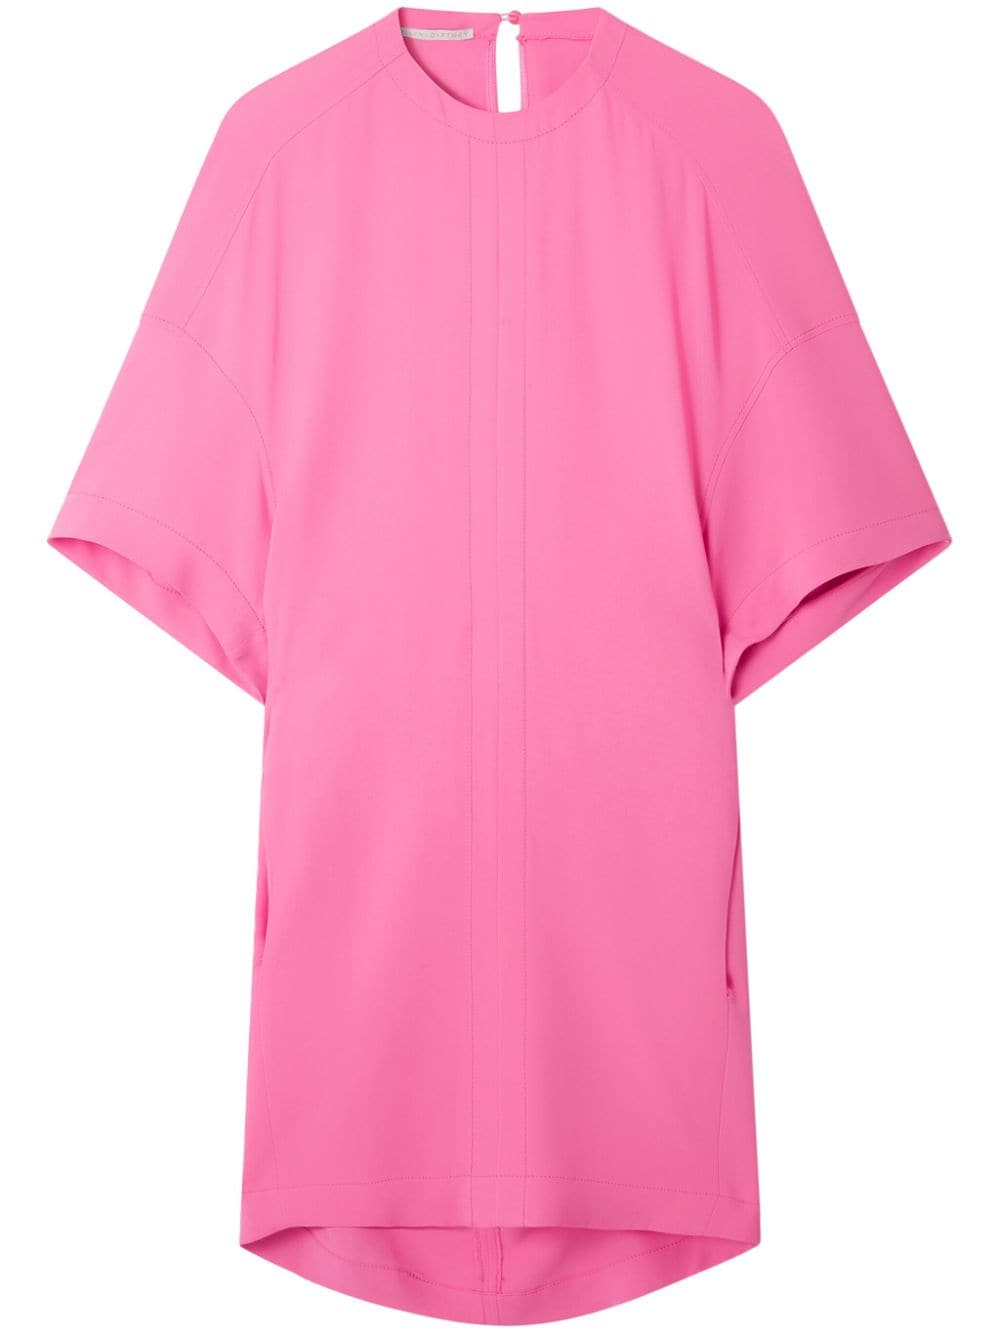 豪华丝绸混纺T恤连衣裙 - 时尚前卫女士的抢眼粉红色选择